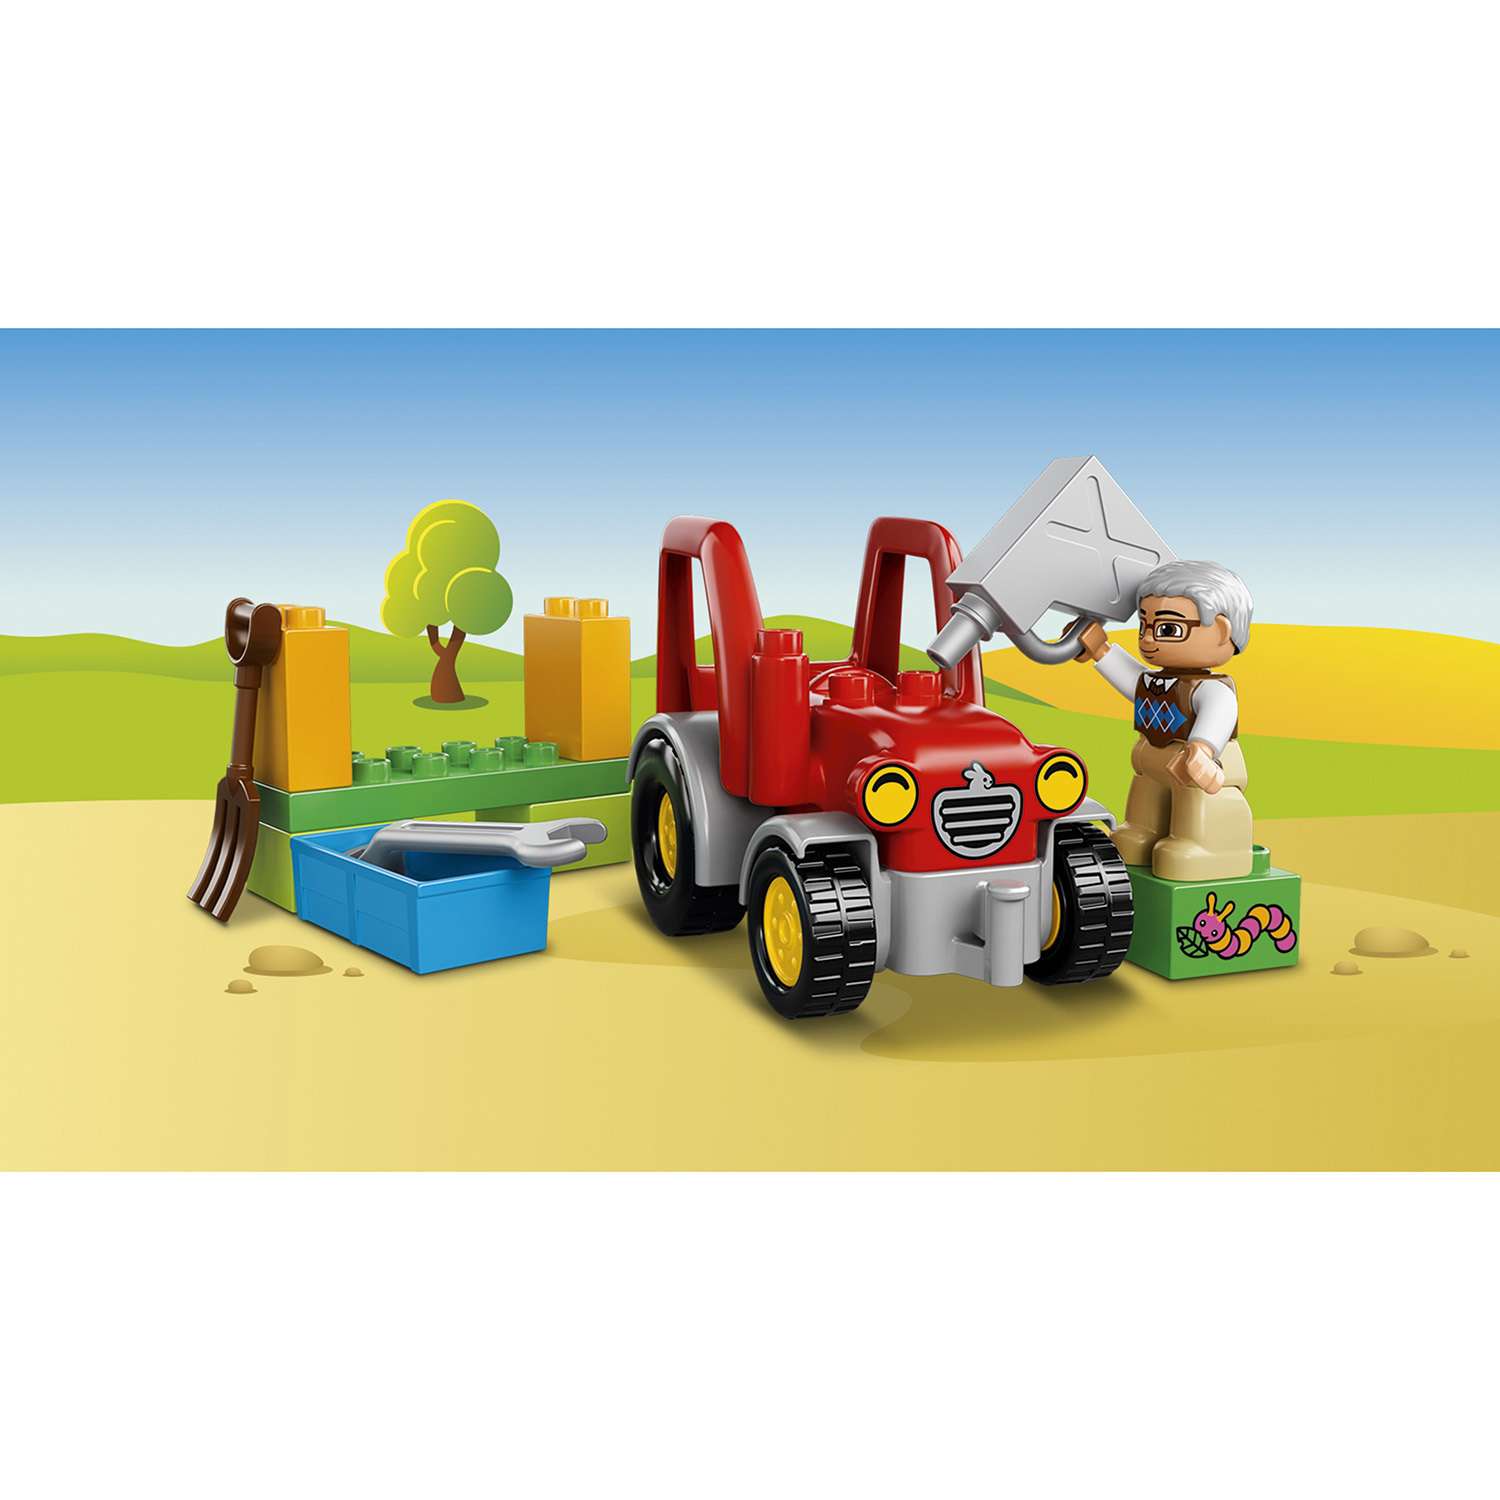 Конструктор LEGO DUPLO Town Сельскохозяйственный трактор (10524) - фото 7